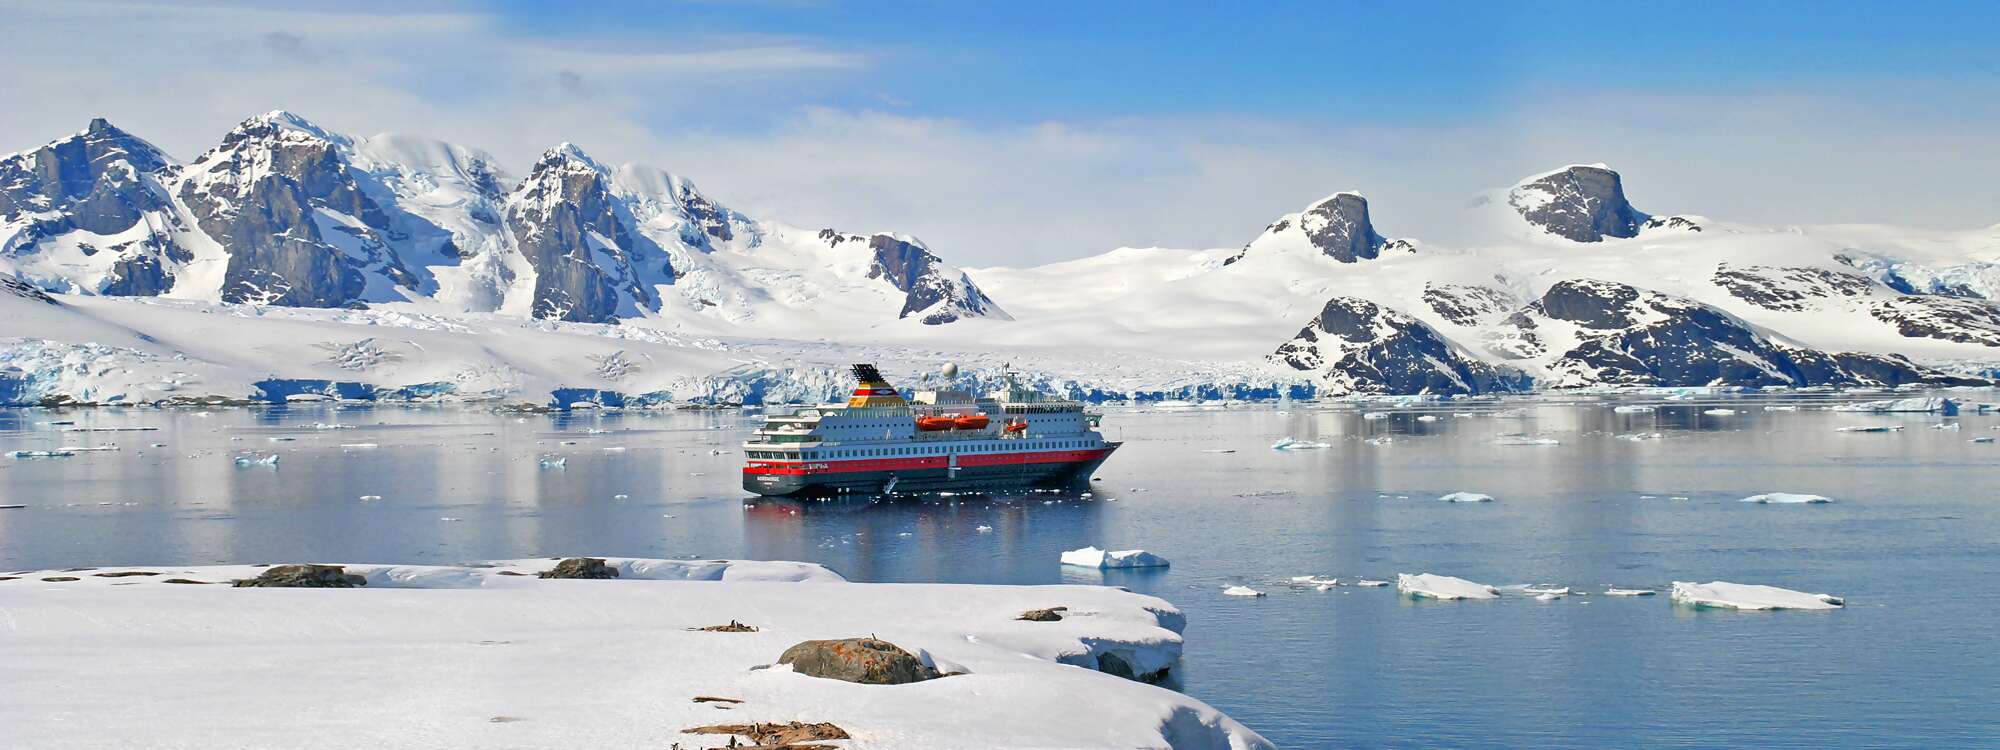 Anlandung an der Petermann-Insel (Petermann Island), eine kleine Insel vor der Antarktischen Halbinsel (gehört zur Inselgruppe Wilhelm-Archipel) in der Region Antarktis